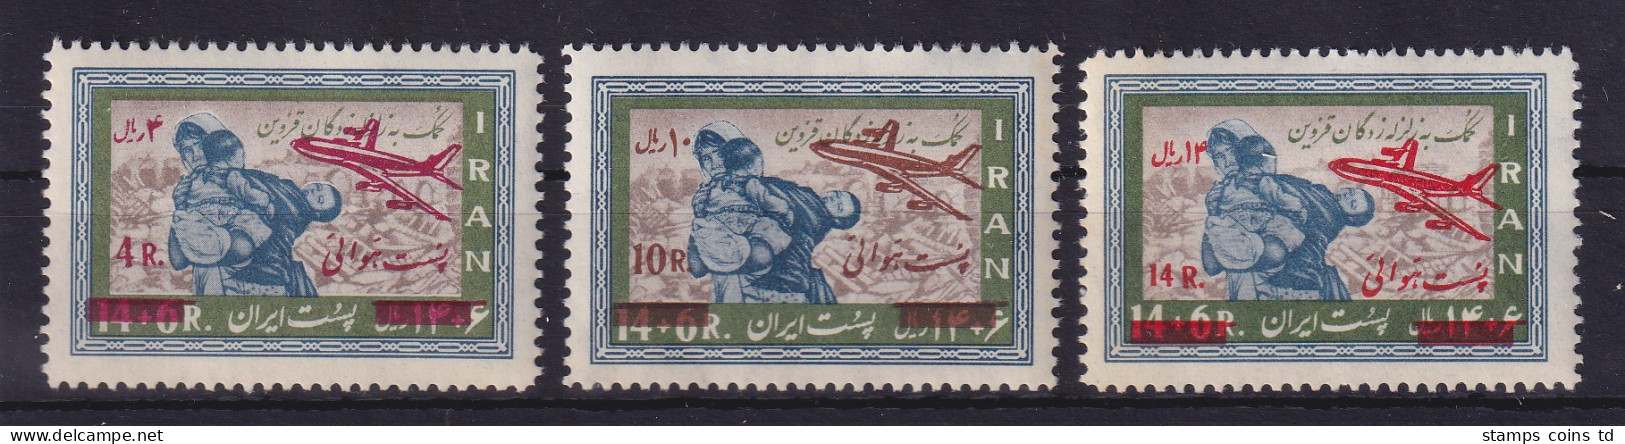 Iran 1969 Flug Großbritannien-Australien Mi.-Nr. 1447-1449 Postfrisch **  - Iran